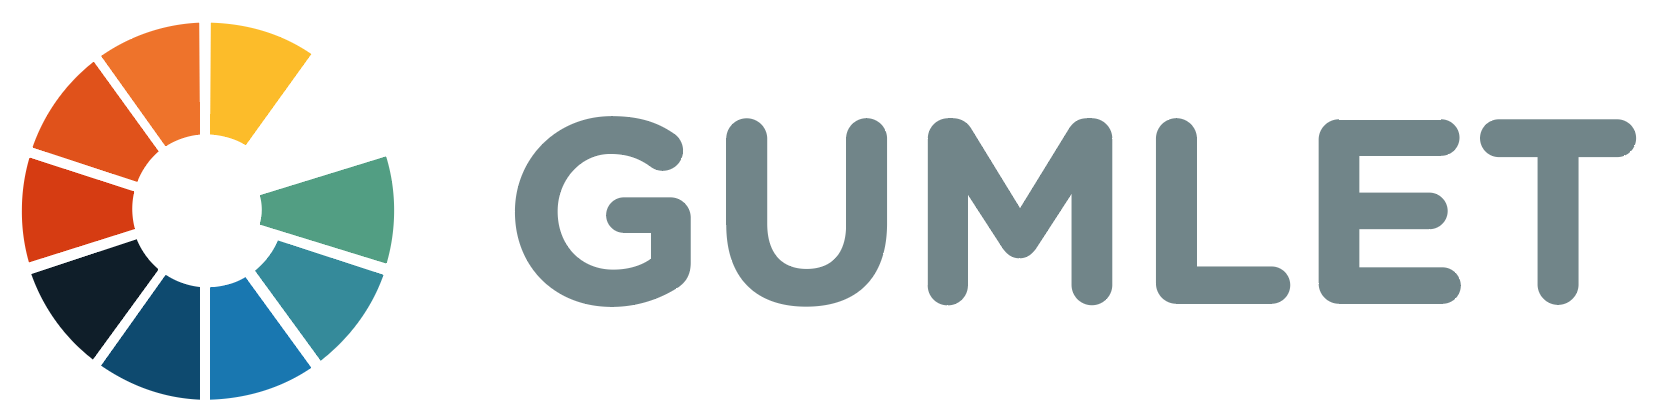 Gumlet logo